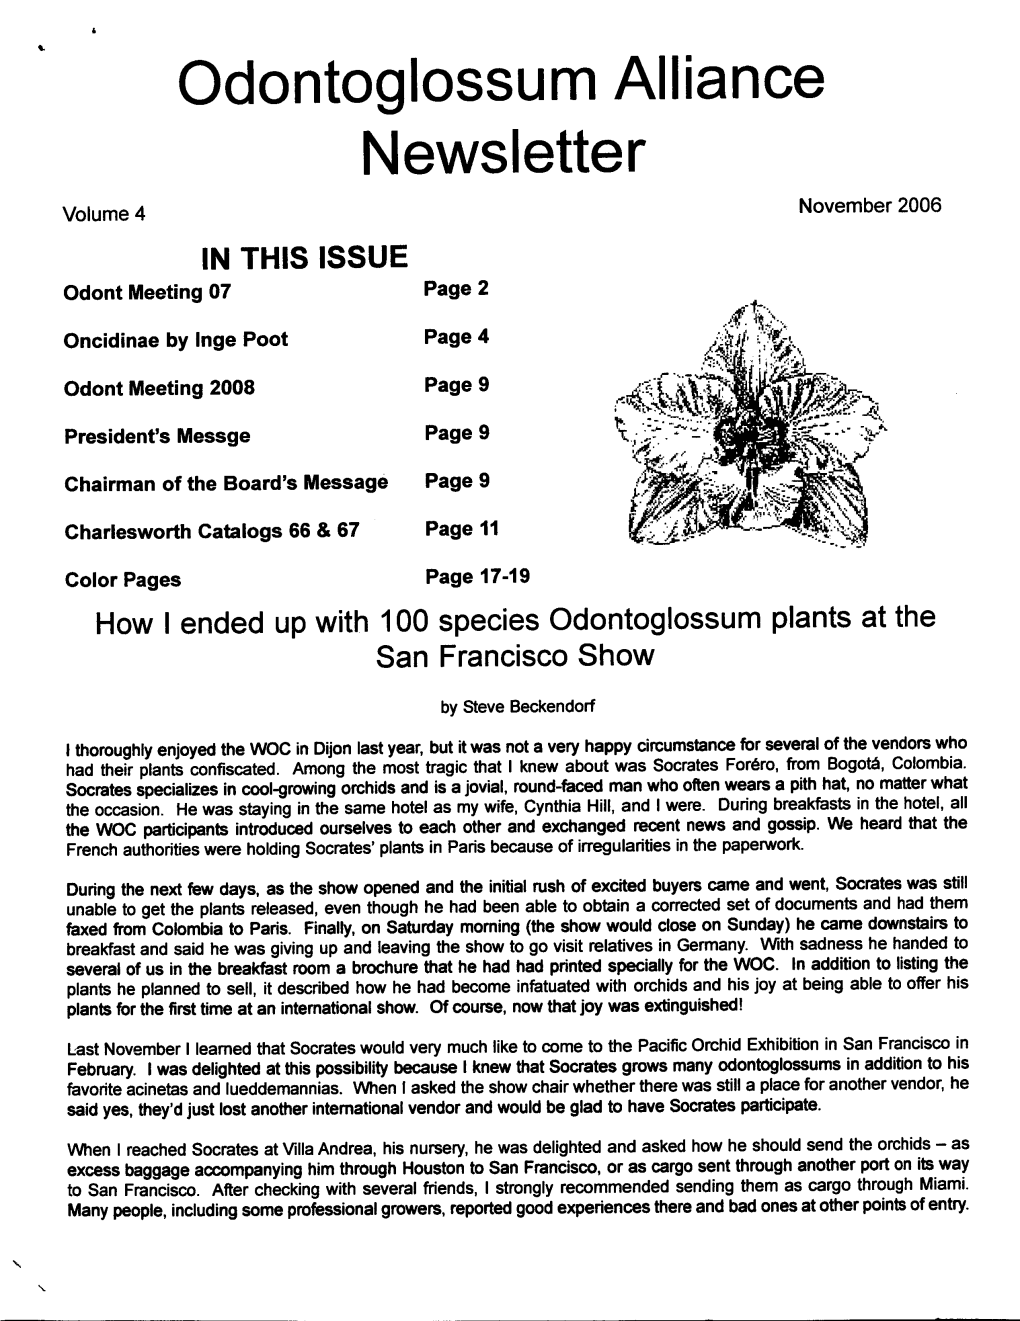 November 2006 Newsletter